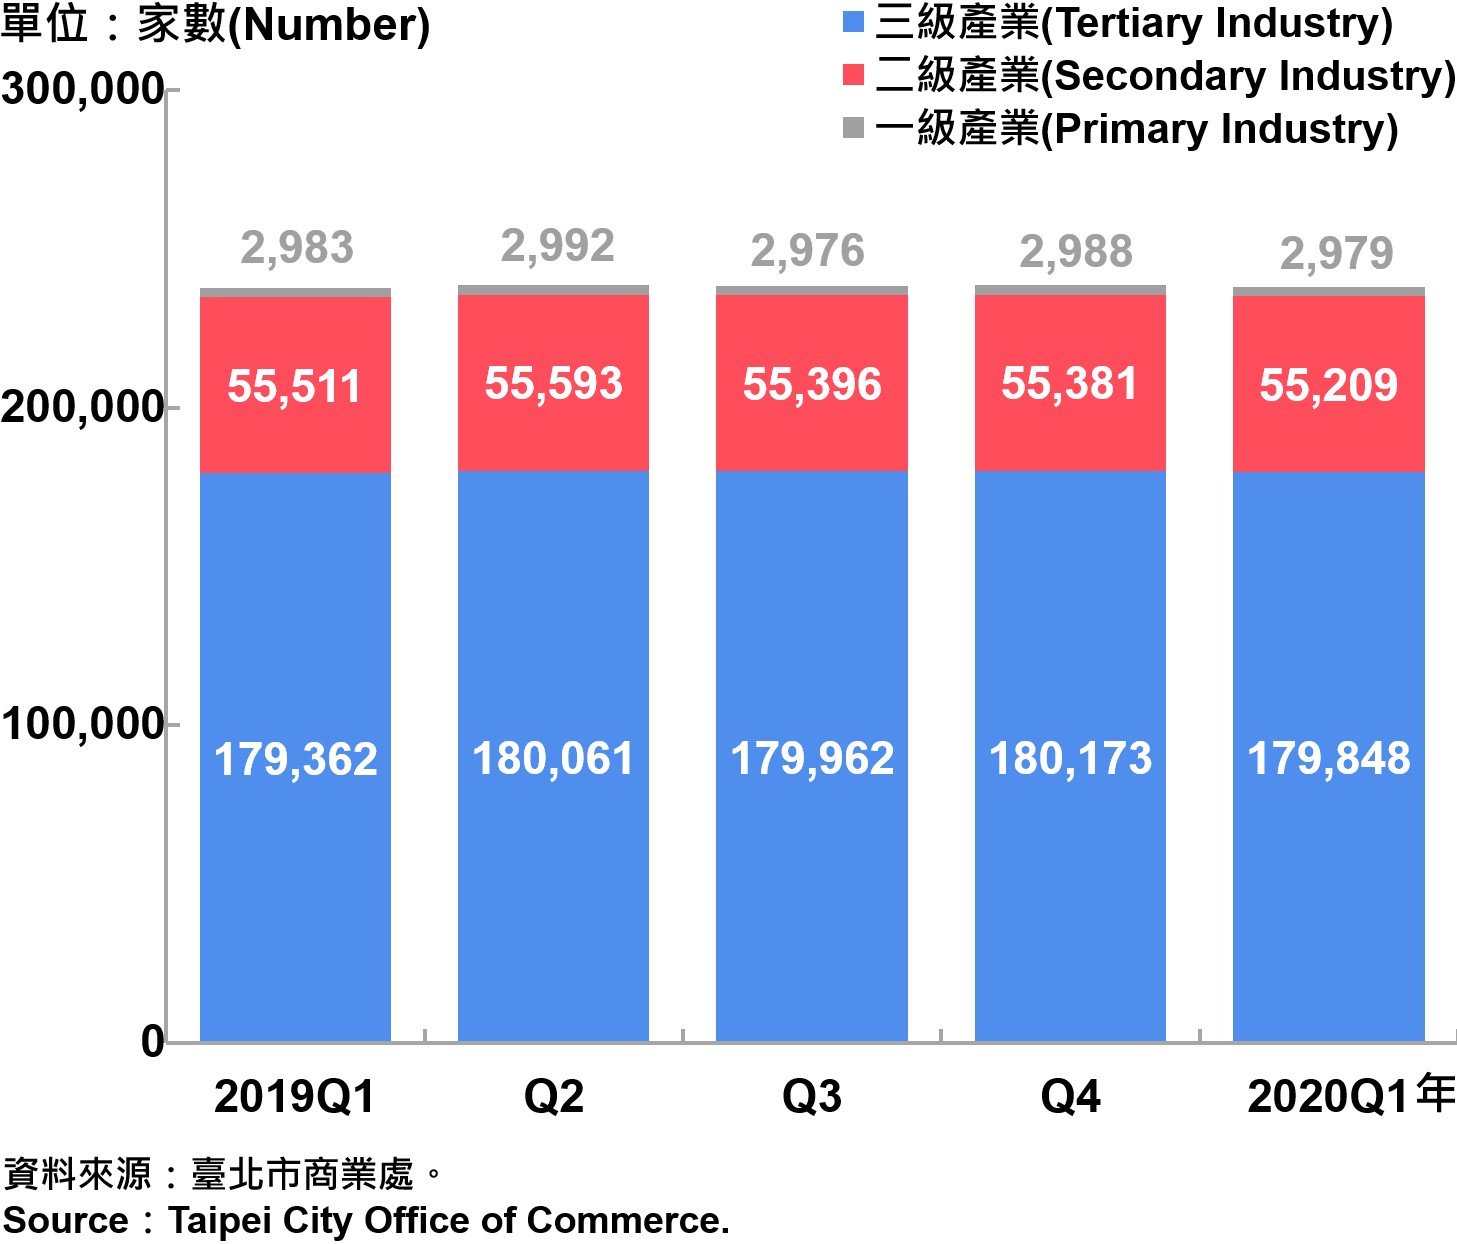 臺北市一二三級產業登記家數—2020Q1 Number of Primary , Secondary and Tertiary Industry in Taipei City—2020Q1